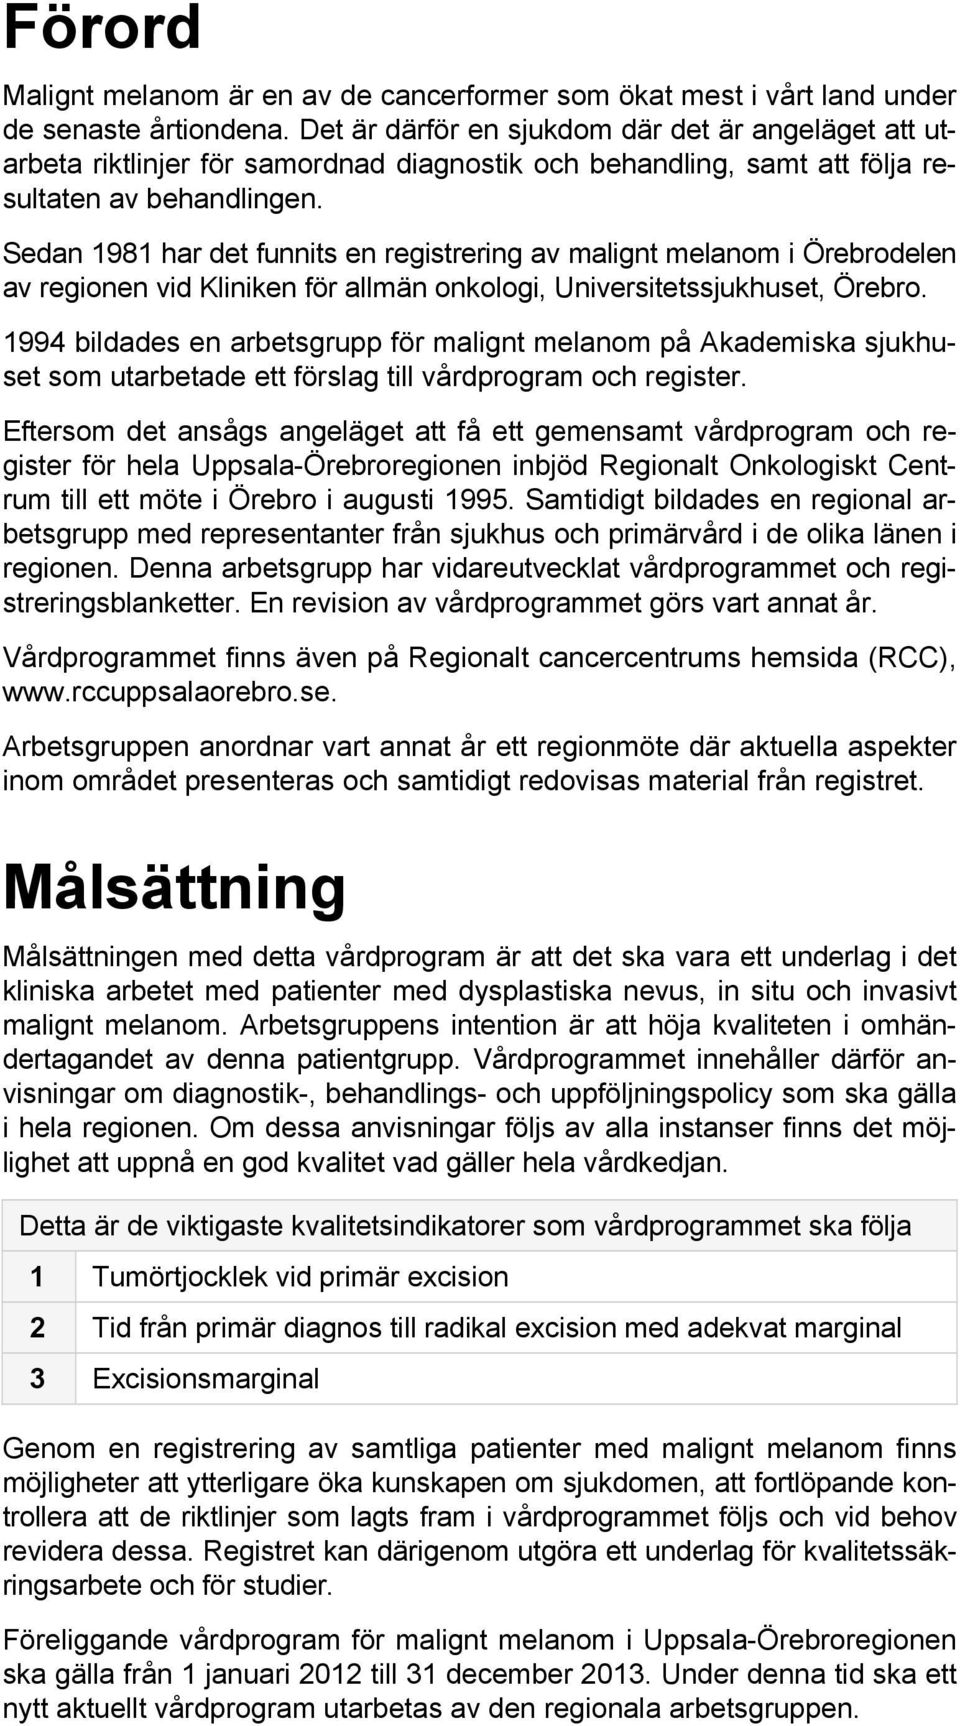 Sedan 1981 har det funnits en registrering av malignt melanom i Örebrodelen av regionen vid Kliniken för allmän onkologi, Universitetssjukhuset, Örebro.